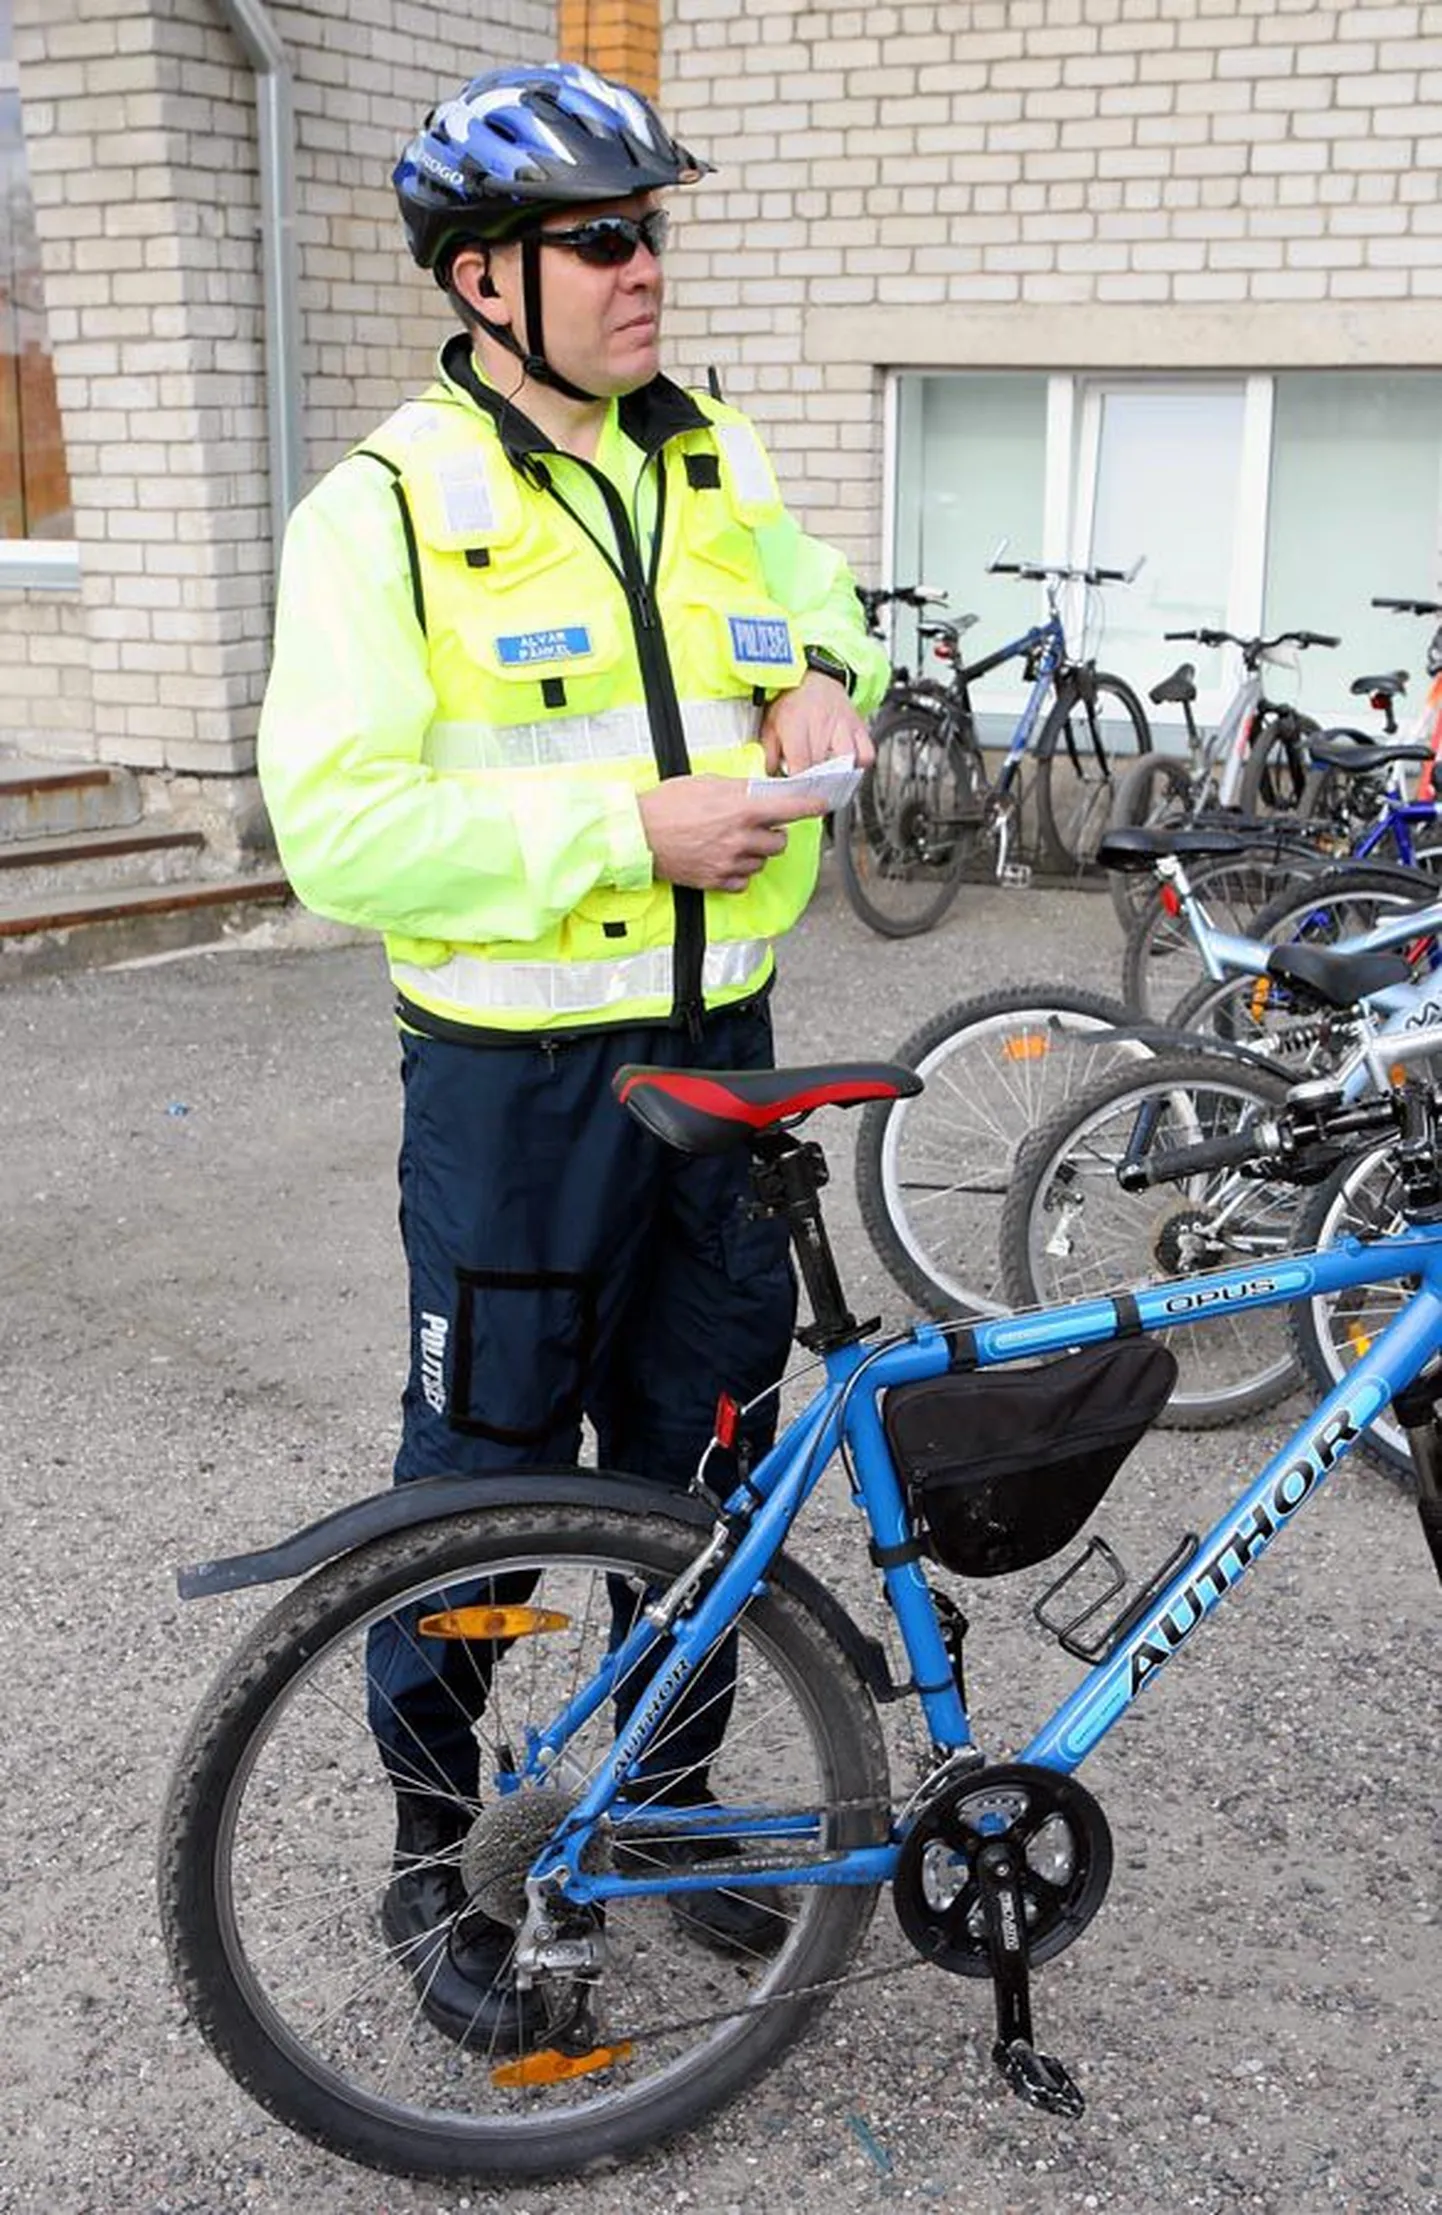 Viljandi politseijuht Alvar Pähkel nentis, et järgmisel nädalal on liiklus varasemast märksa närvilisem. Ratastel kooliminejad peaksid kontrollima oma ratta turvavarustust.